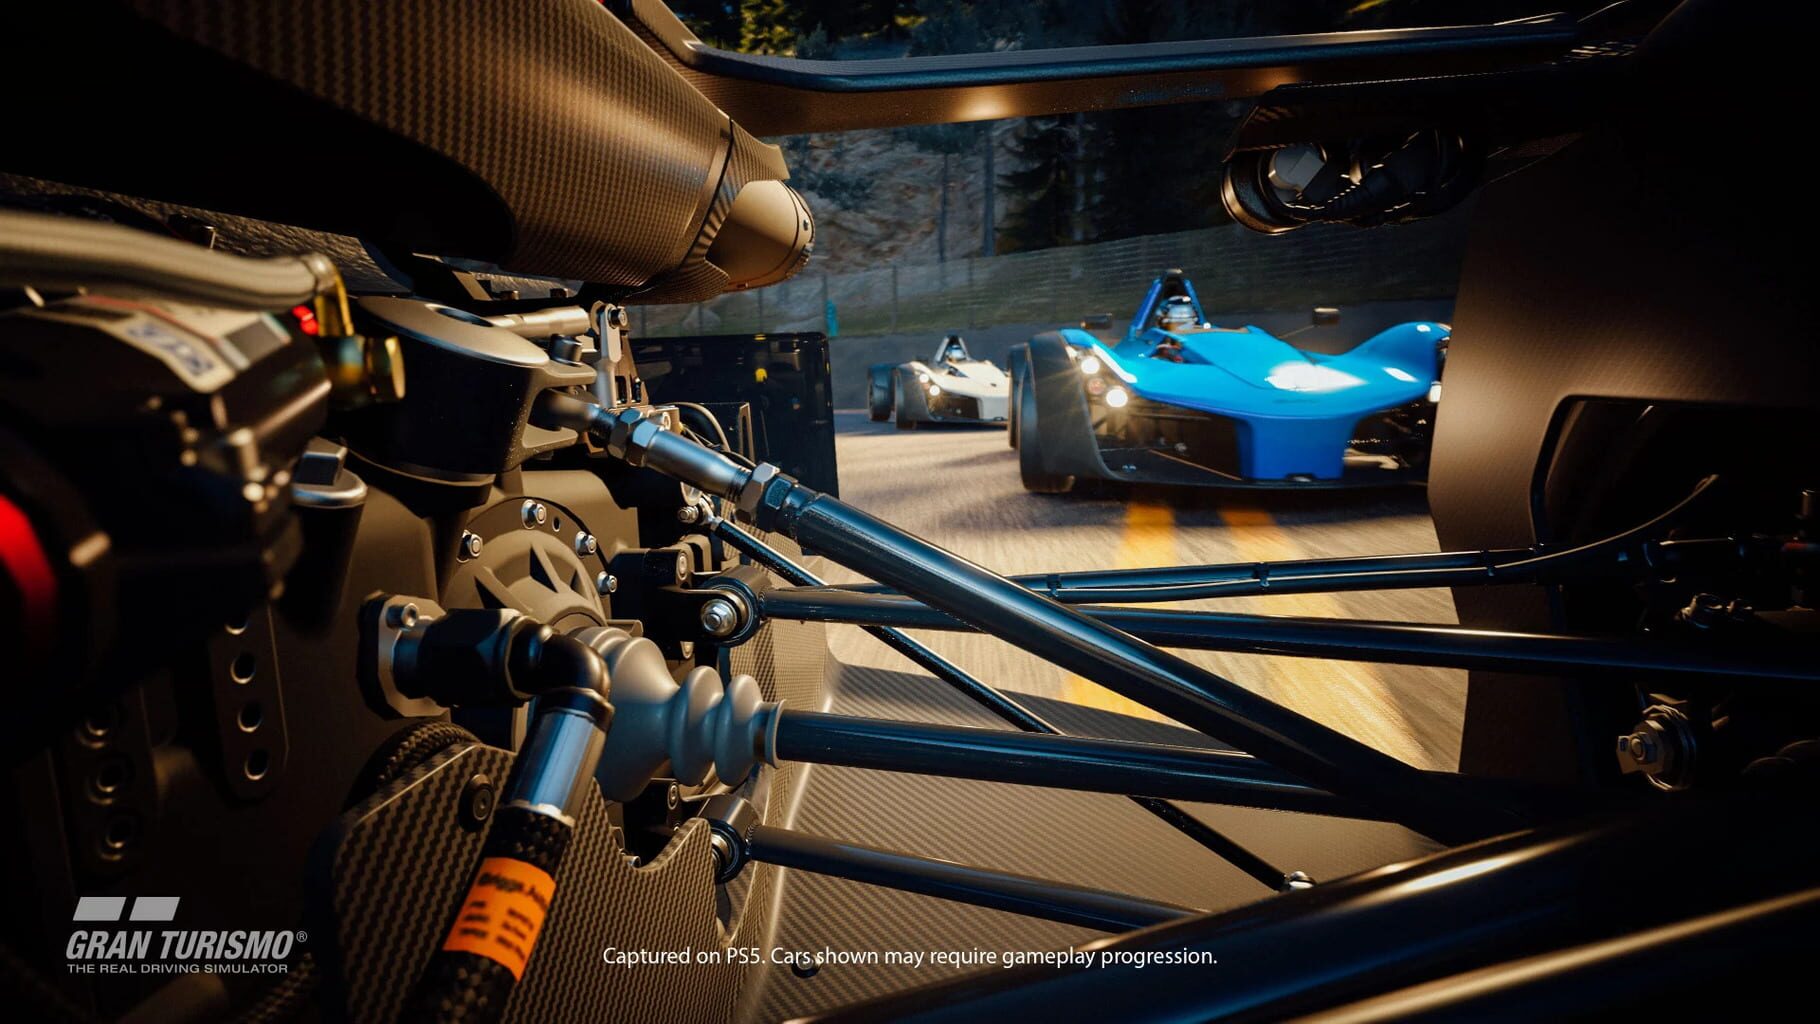 Captura de pantalla - Gran Turismo 7: 25th Anniversary Edition